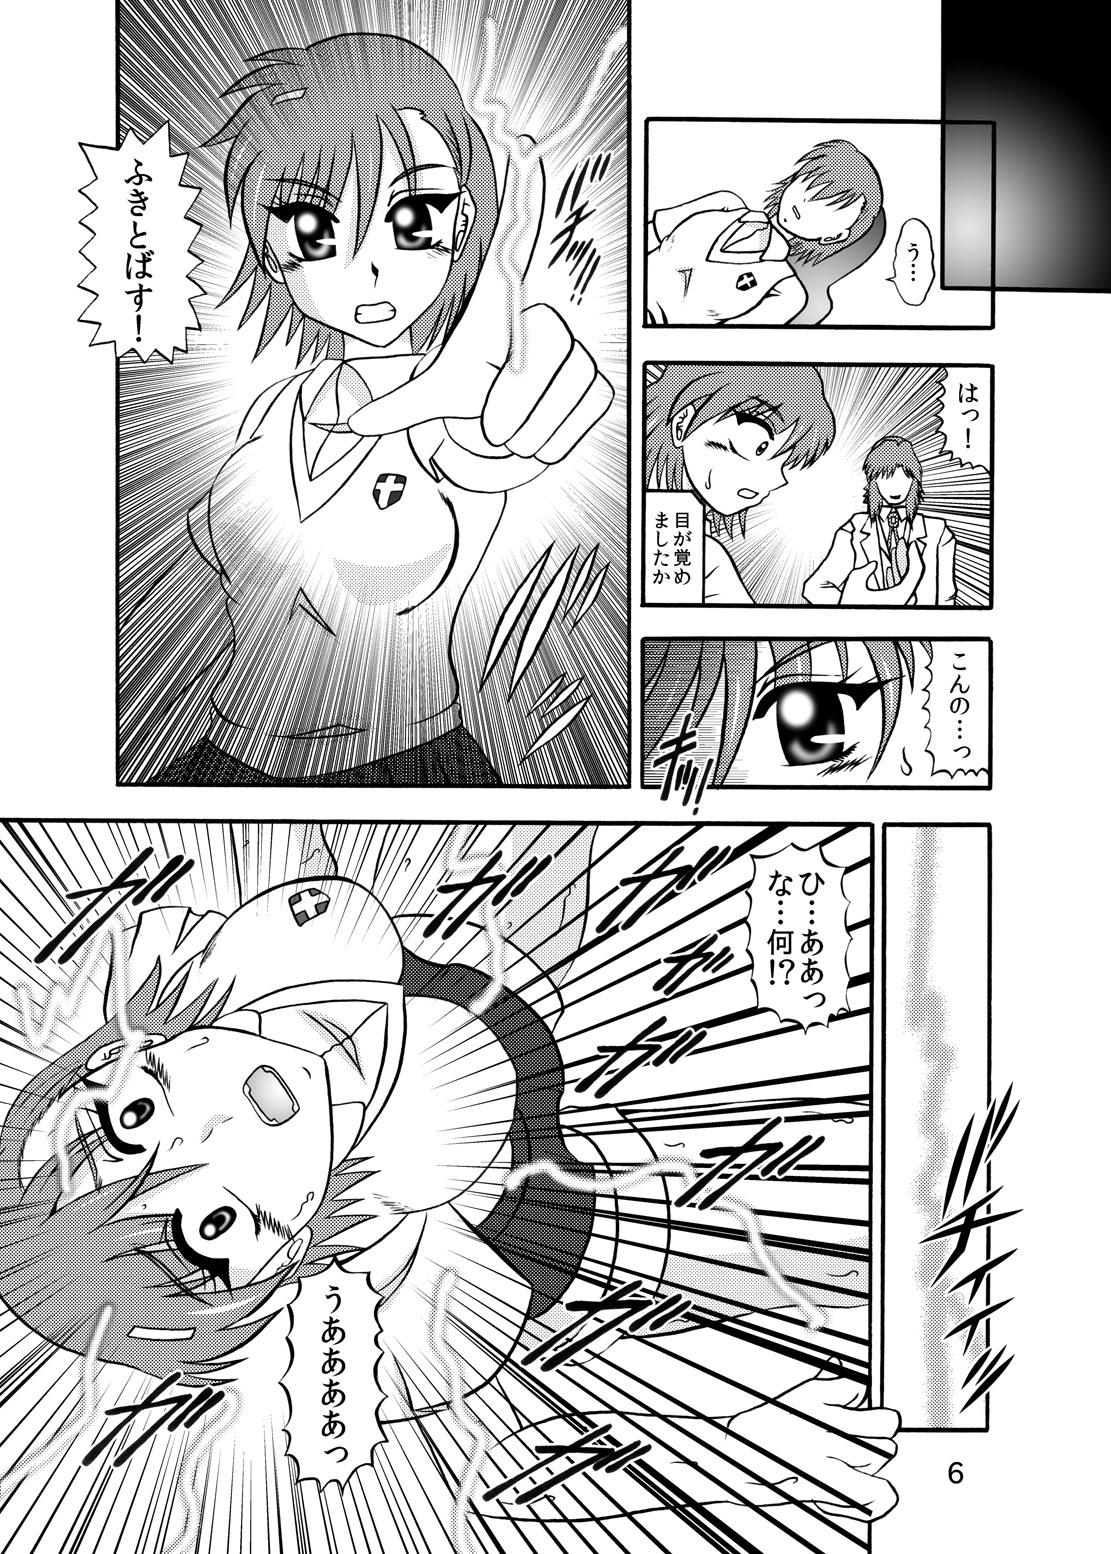 Funny Inyoku Kaizou: Misaka Mikoto - Toaru kagaku no railgun Fat Pussy - Page 4